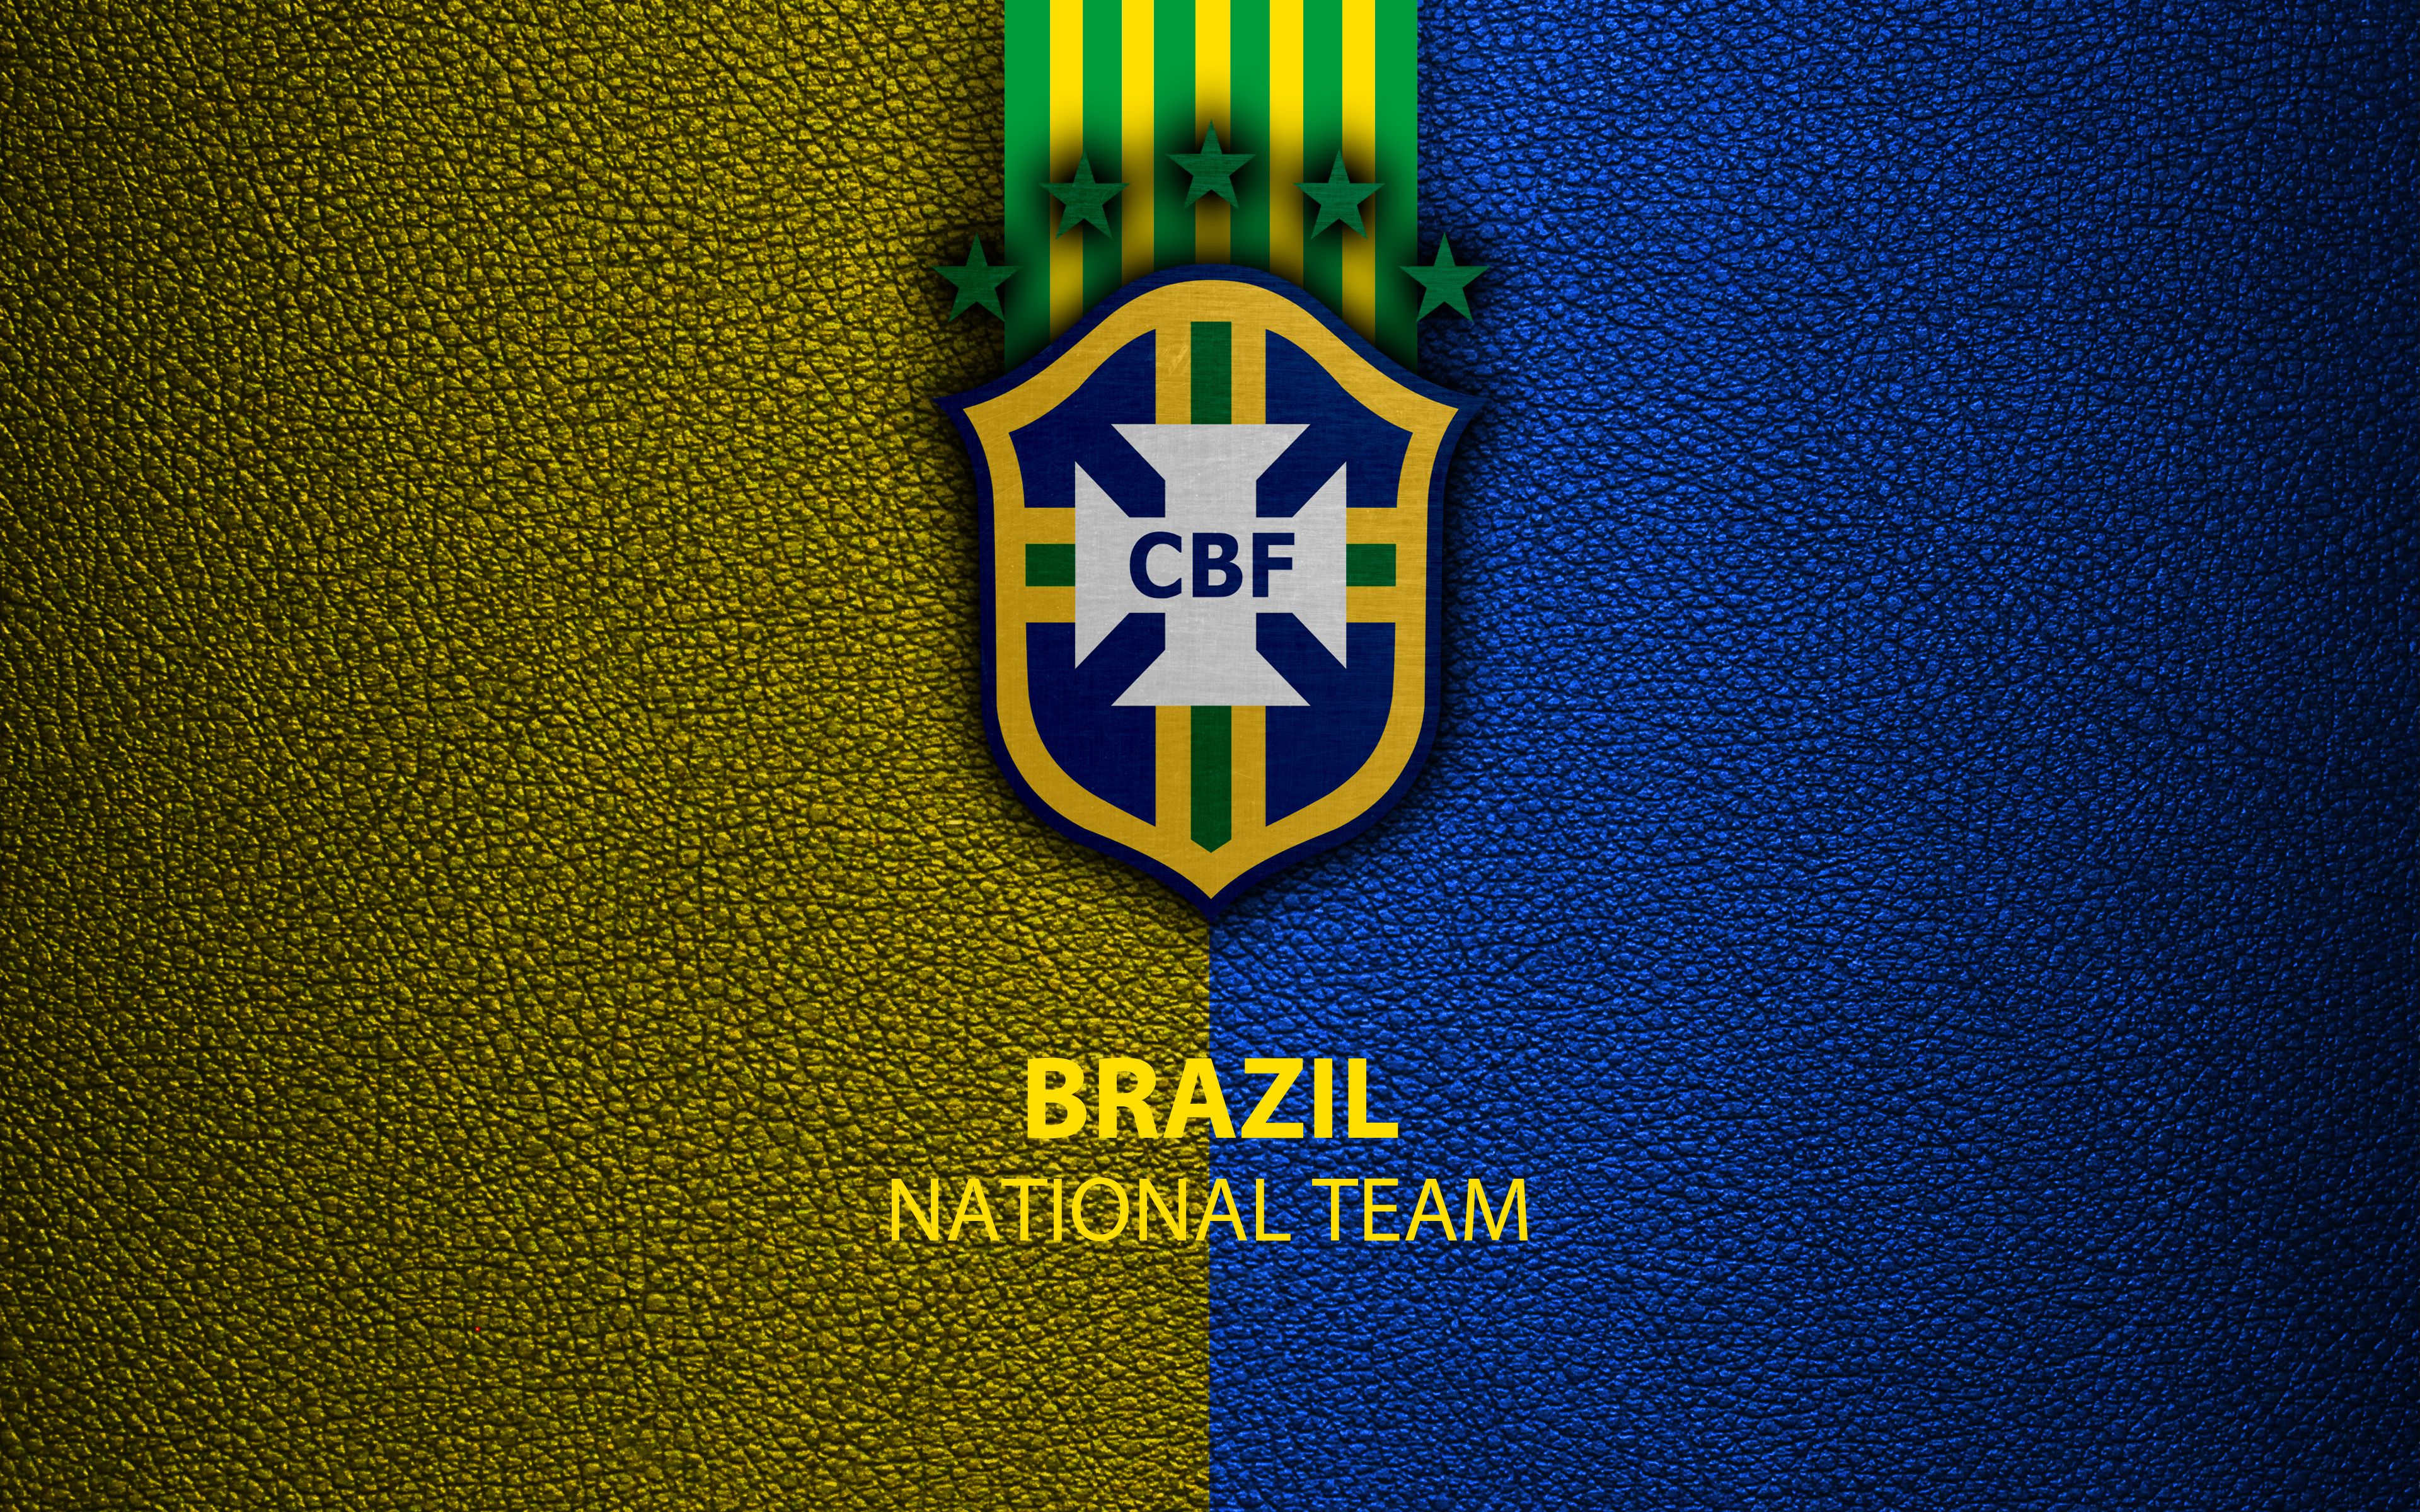 Brazil National Football Team 4k Ultra HD Wallpaper. Background